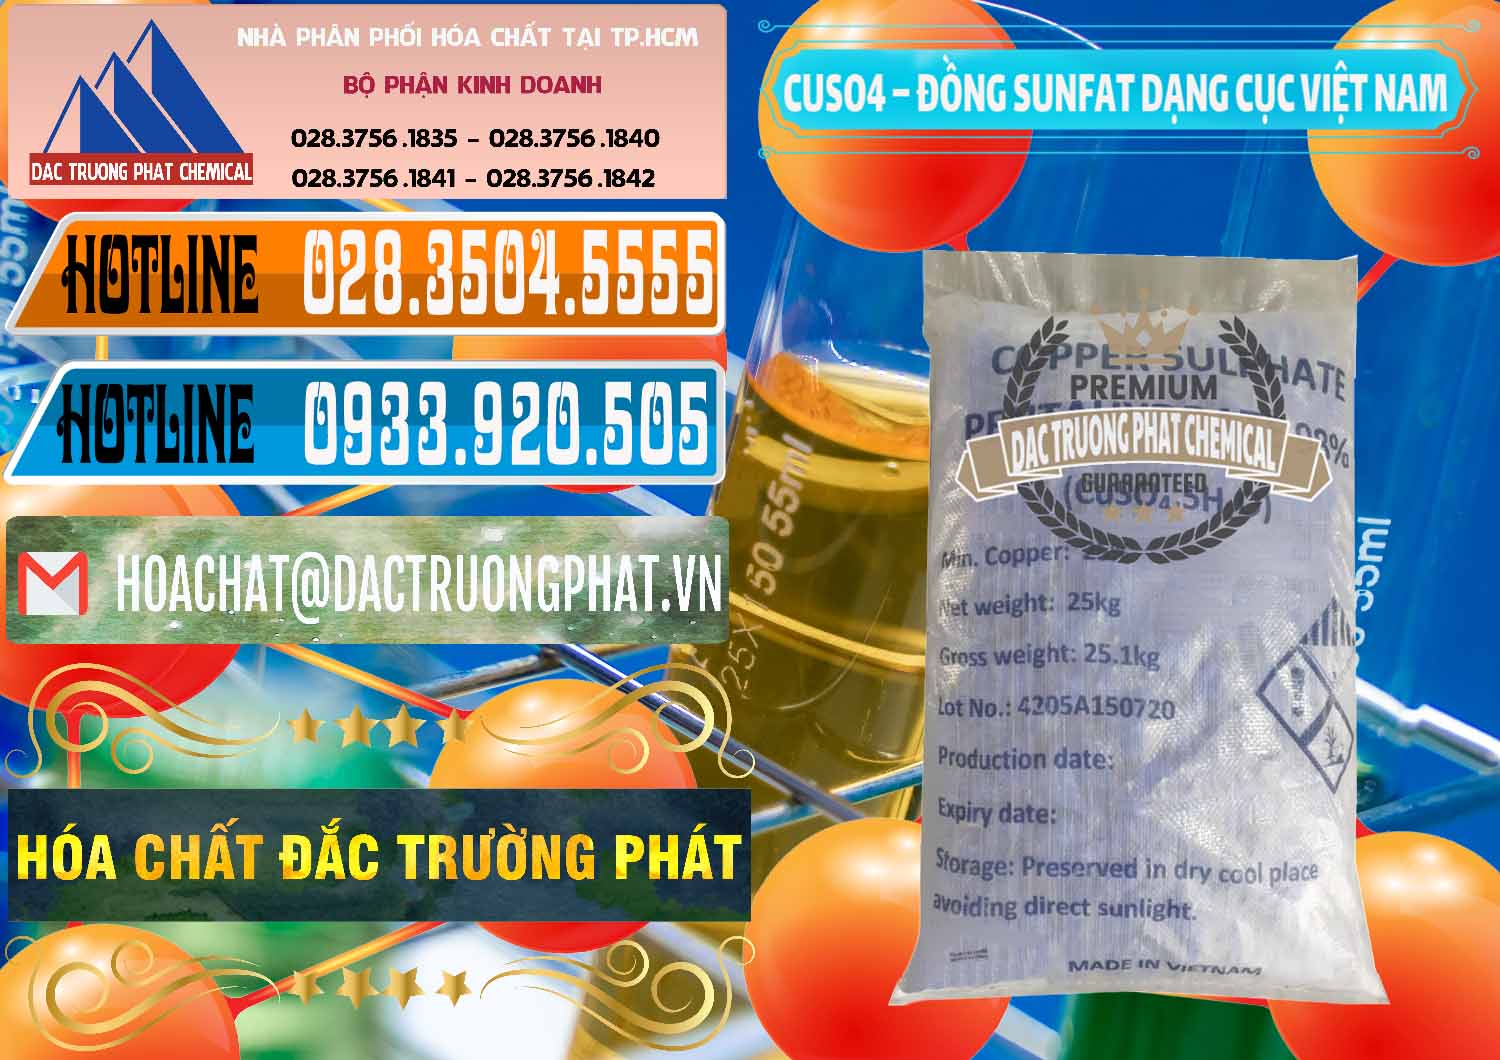 Kinh doanh _ bán CUSO4 – Đồng Sunfat Dạng Cục Việt Nam - 0303 - Công ty phân phối ( cung cấp ) hóa chất tại TP.HCM - stmp.net